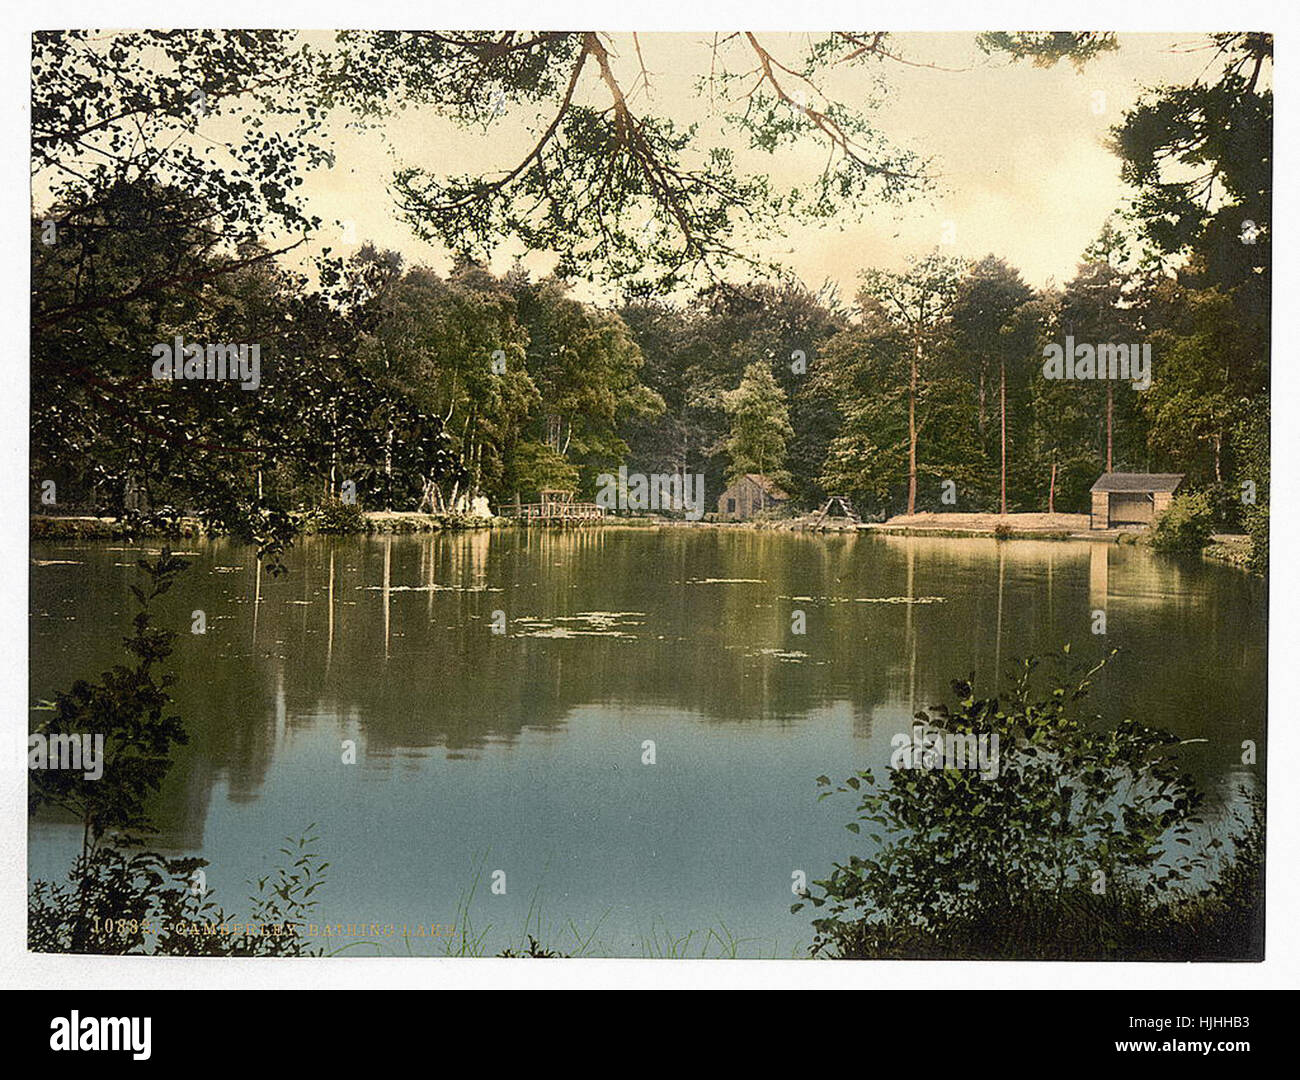 Collège militaire royal, lac de baignade, Sandhurst, Camberley, Angleterre - Photochrom xixème siècle Banque D'Images